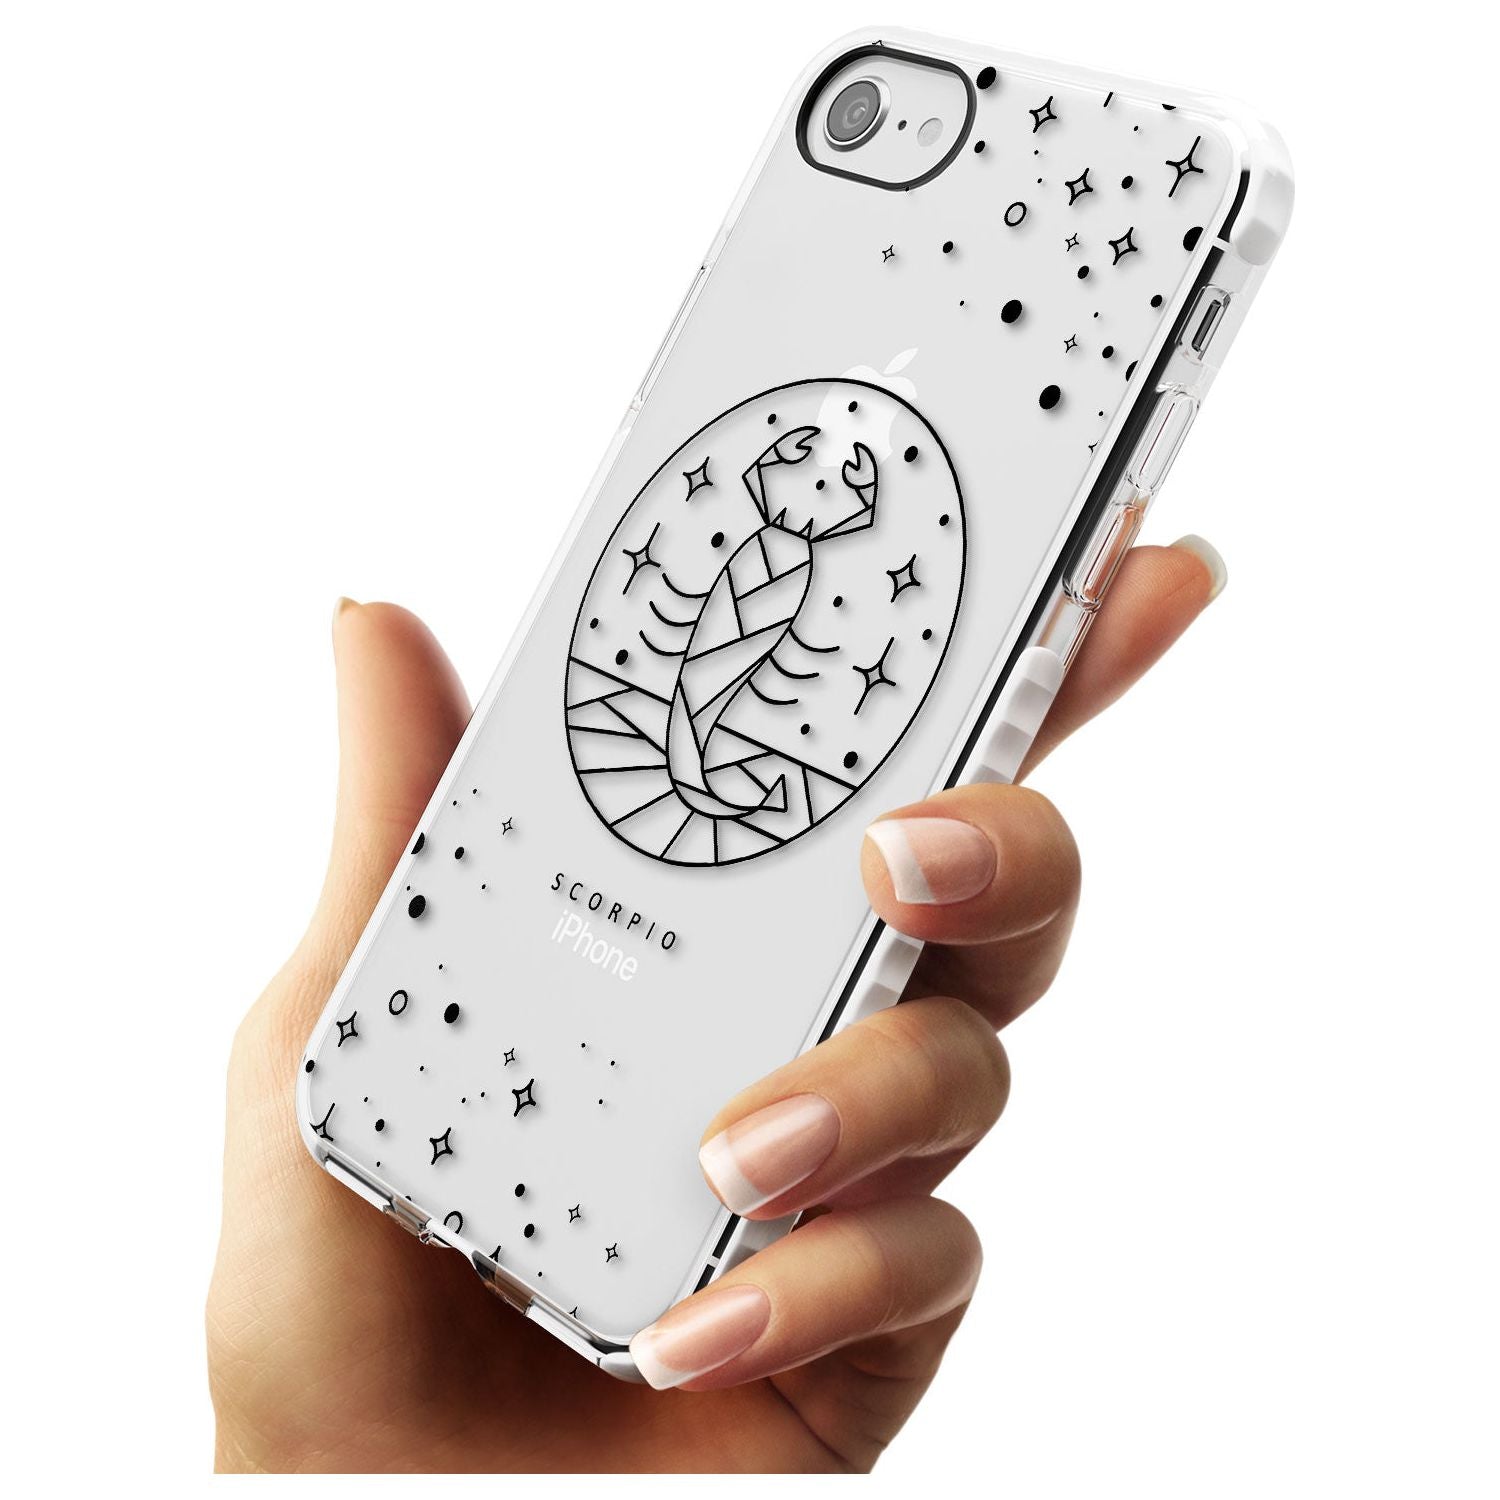 Scorpio Emblem - Transparent Design Impact Phone Case for iPhone SE 8 7 Plus